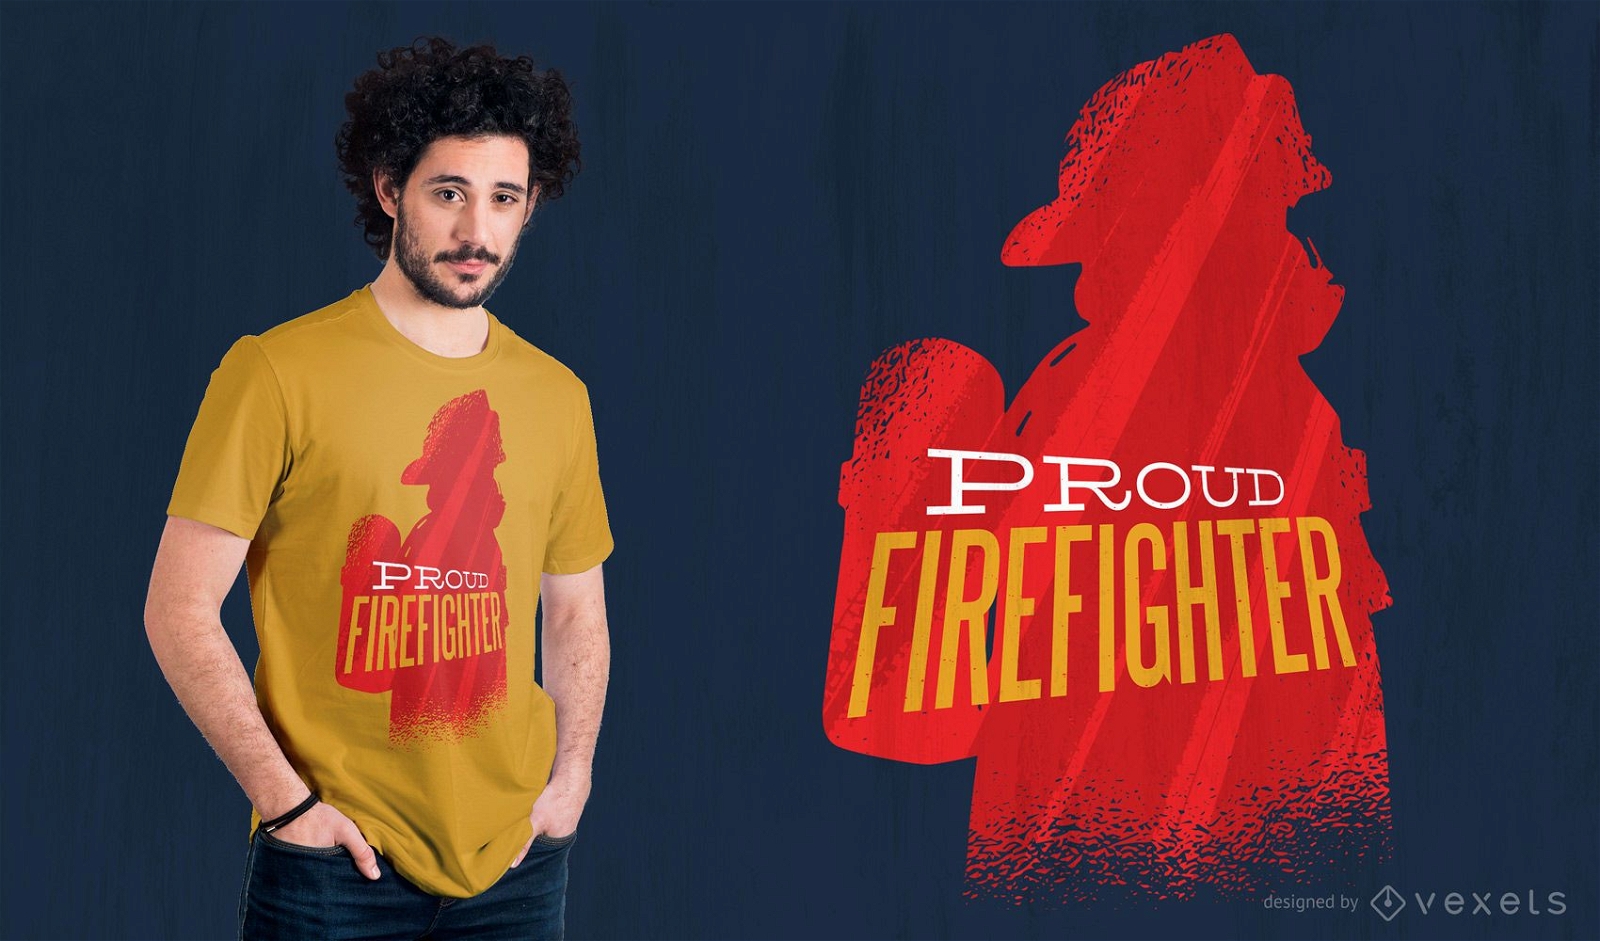 Proud firefighter t-shirt design